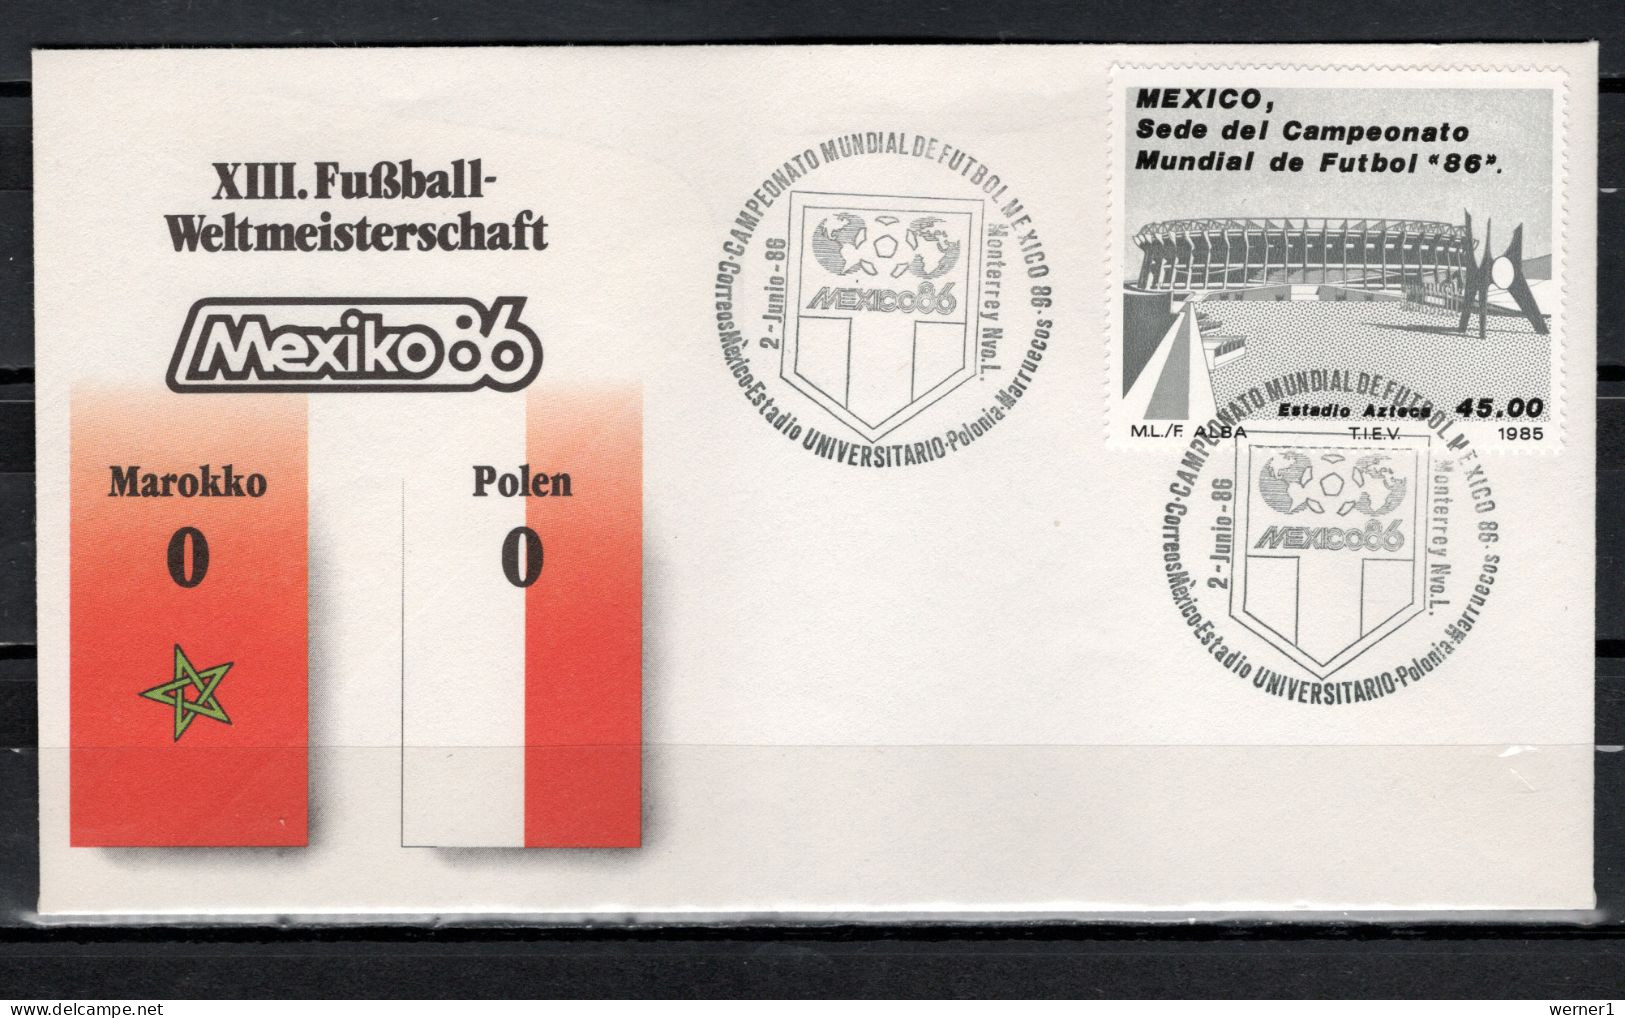 Mexico 1986 Football Soccer World Cup Commemorative Cover Match Morocco - Poland 0 : 0 - 1986 – Mexiko